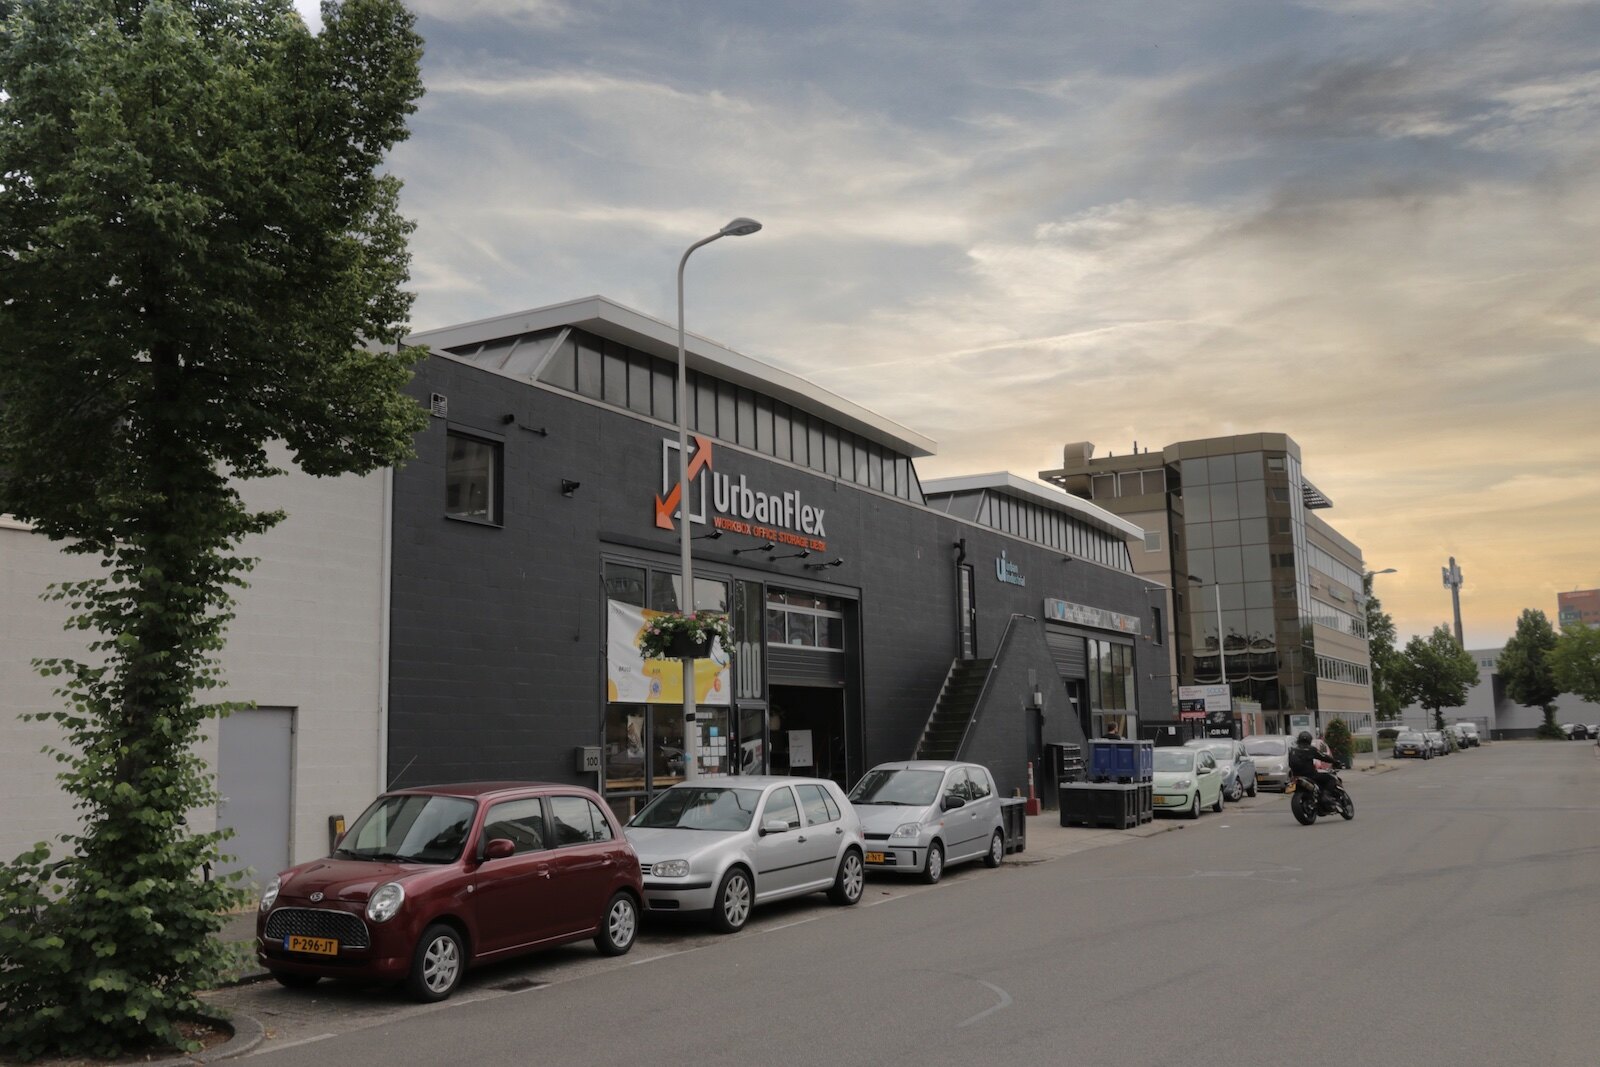 UrbanFlex, home of Brouwerij Eleven 